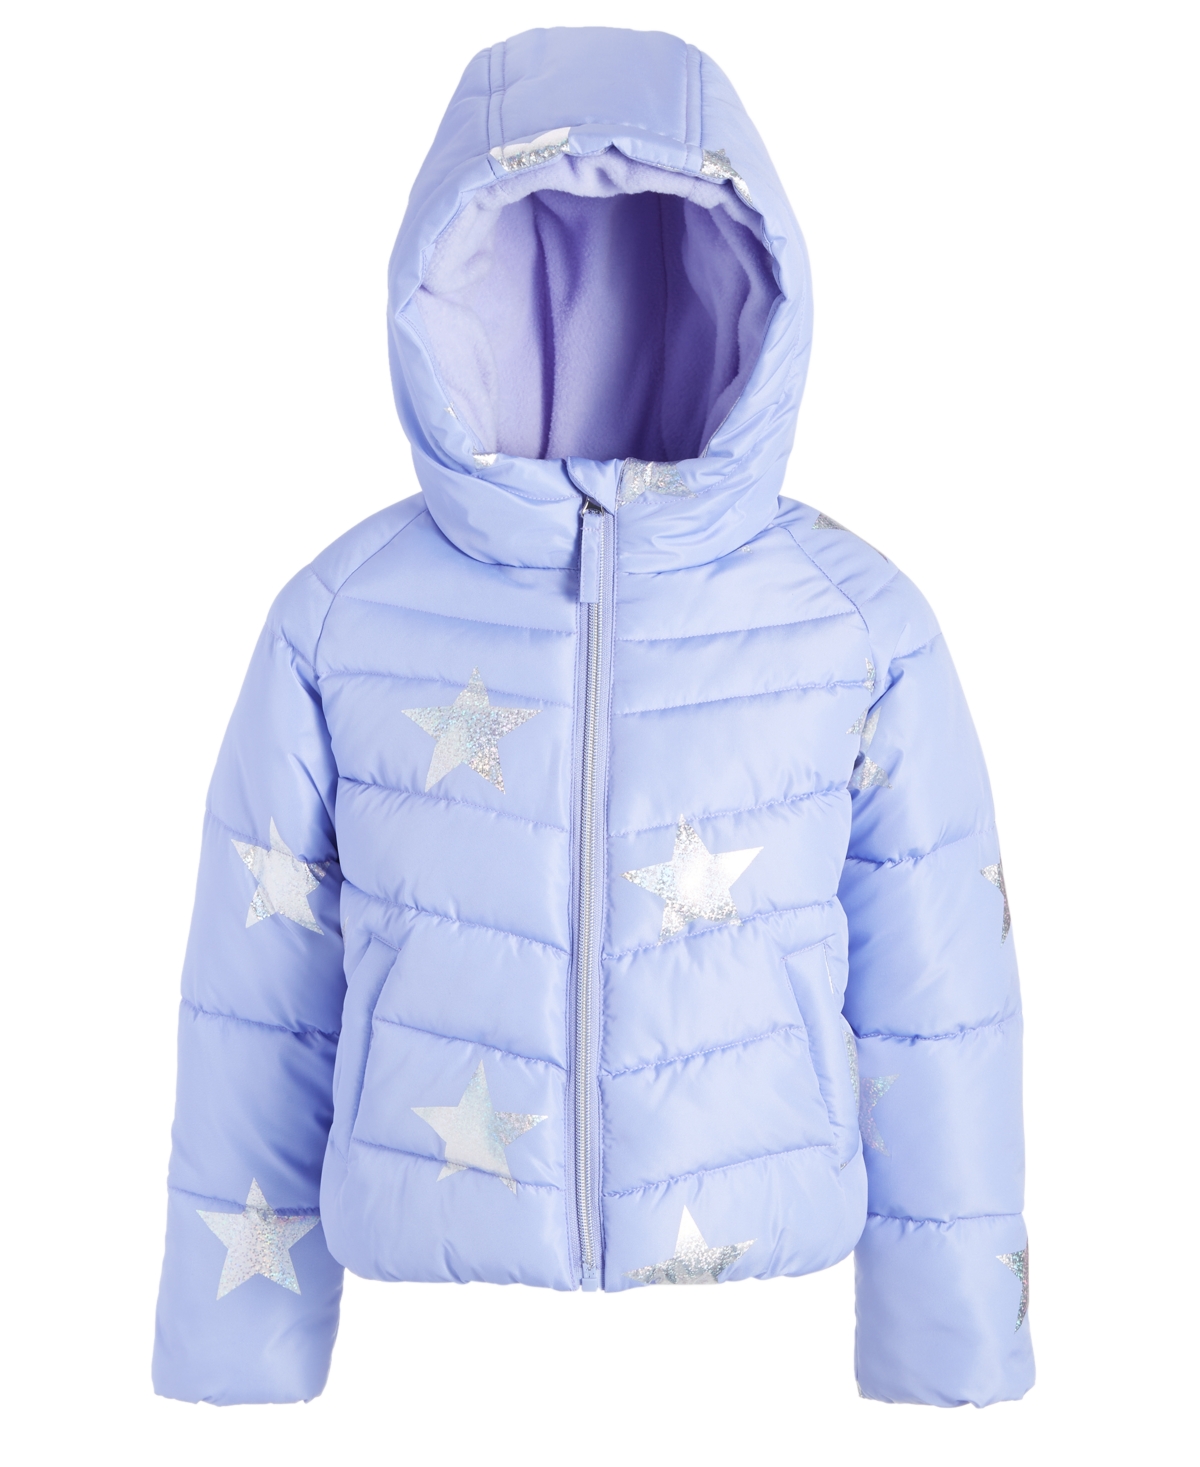 S Rothschild & Co S Rothschilld & Co Toddler & Little Girls Silver Star Foil Printed Puffer Coat In Lavender Stars